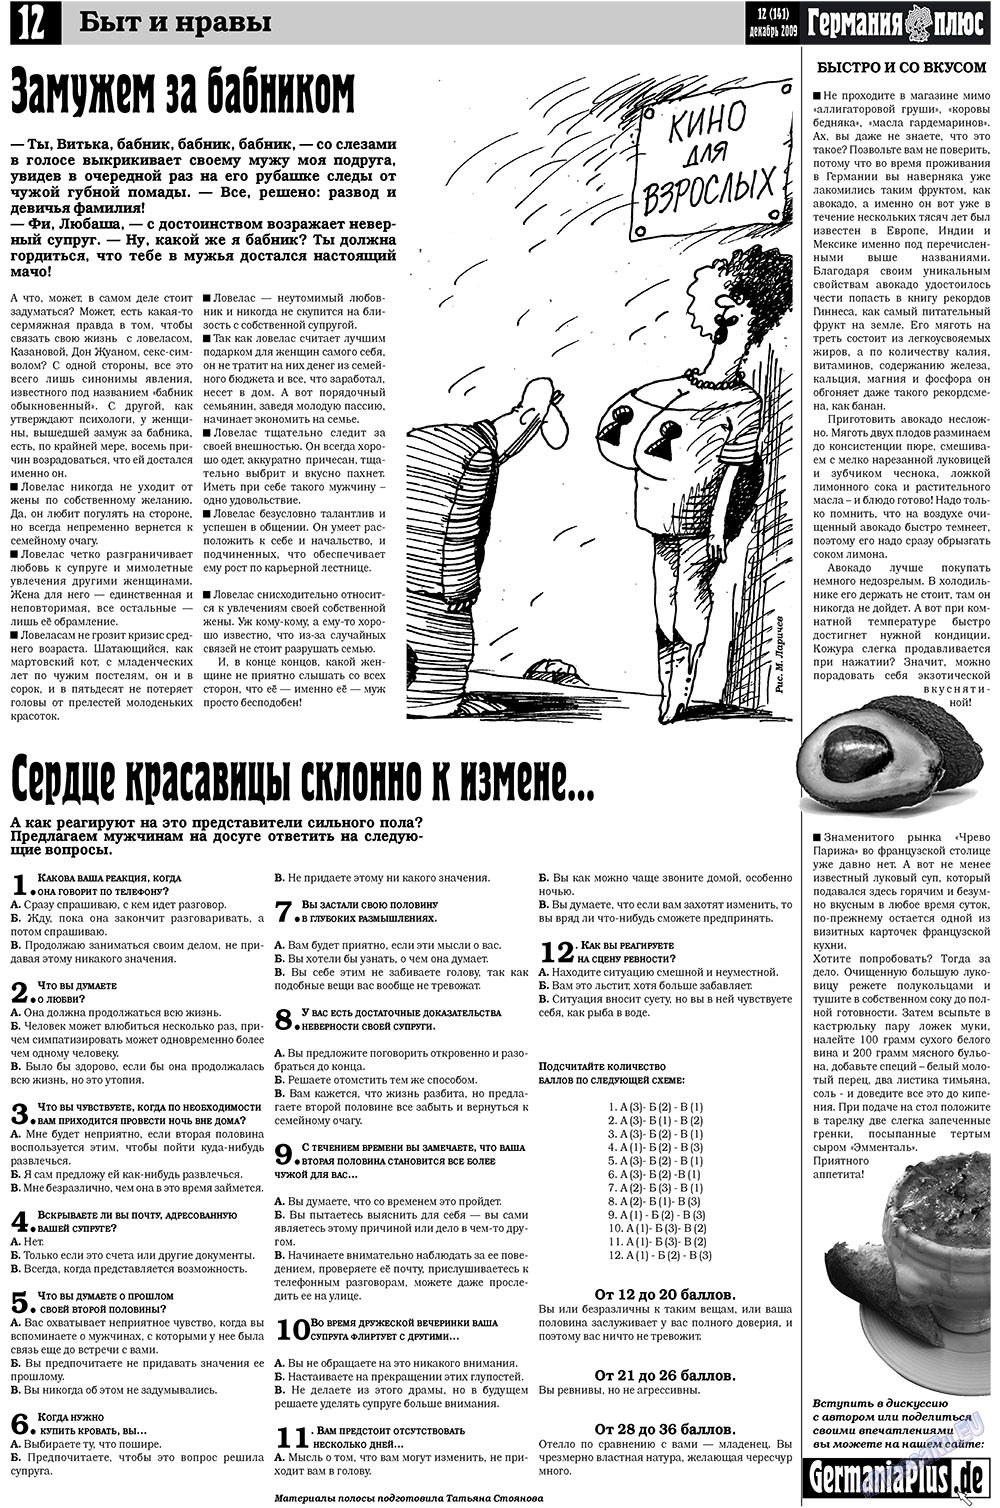 Германия плюс (газета). 2009 год, номер 12, стр. 12